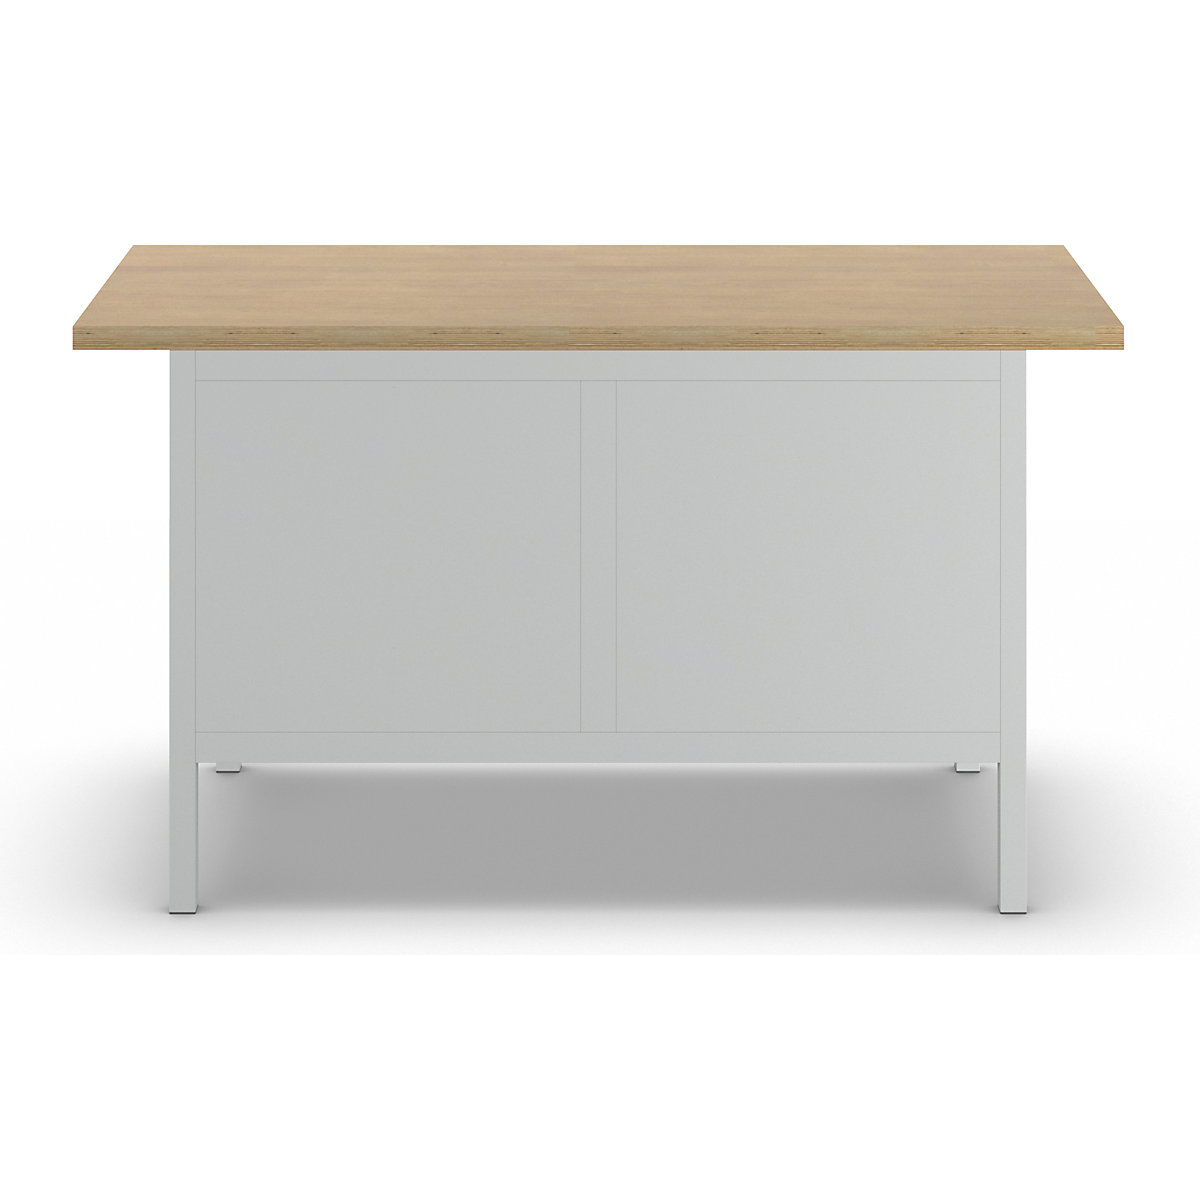 Stół warsztatowy z blatem z litego buku, konstrukcja ramowa – LISTA (Zdjęcie produktu 3)-2